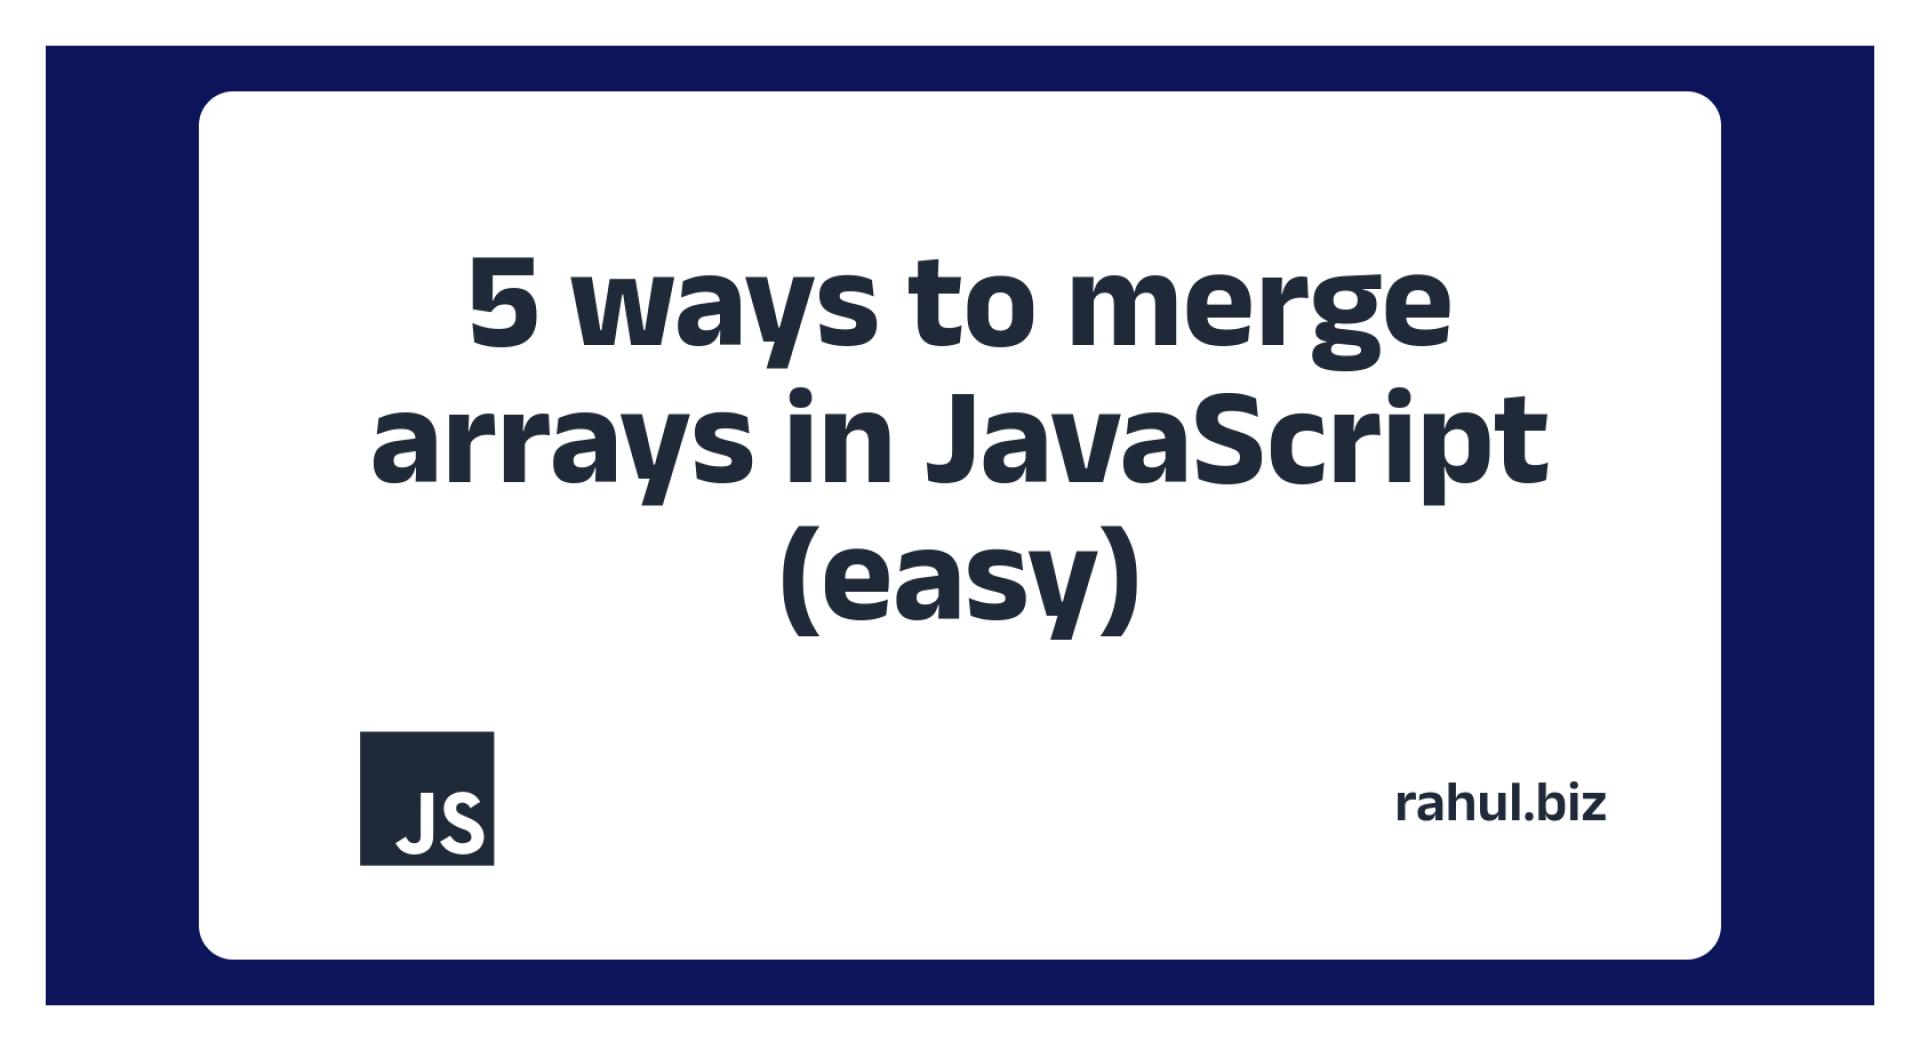 5 ways to merge arrays in JavaScript (easy)